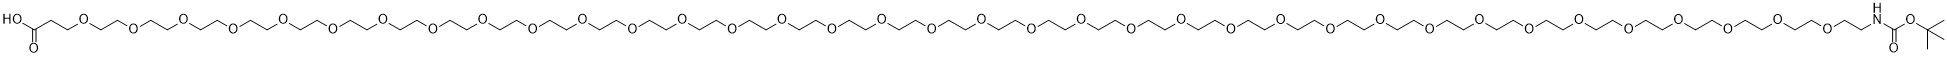 t-Boc-N-Amido-PEG36-acid